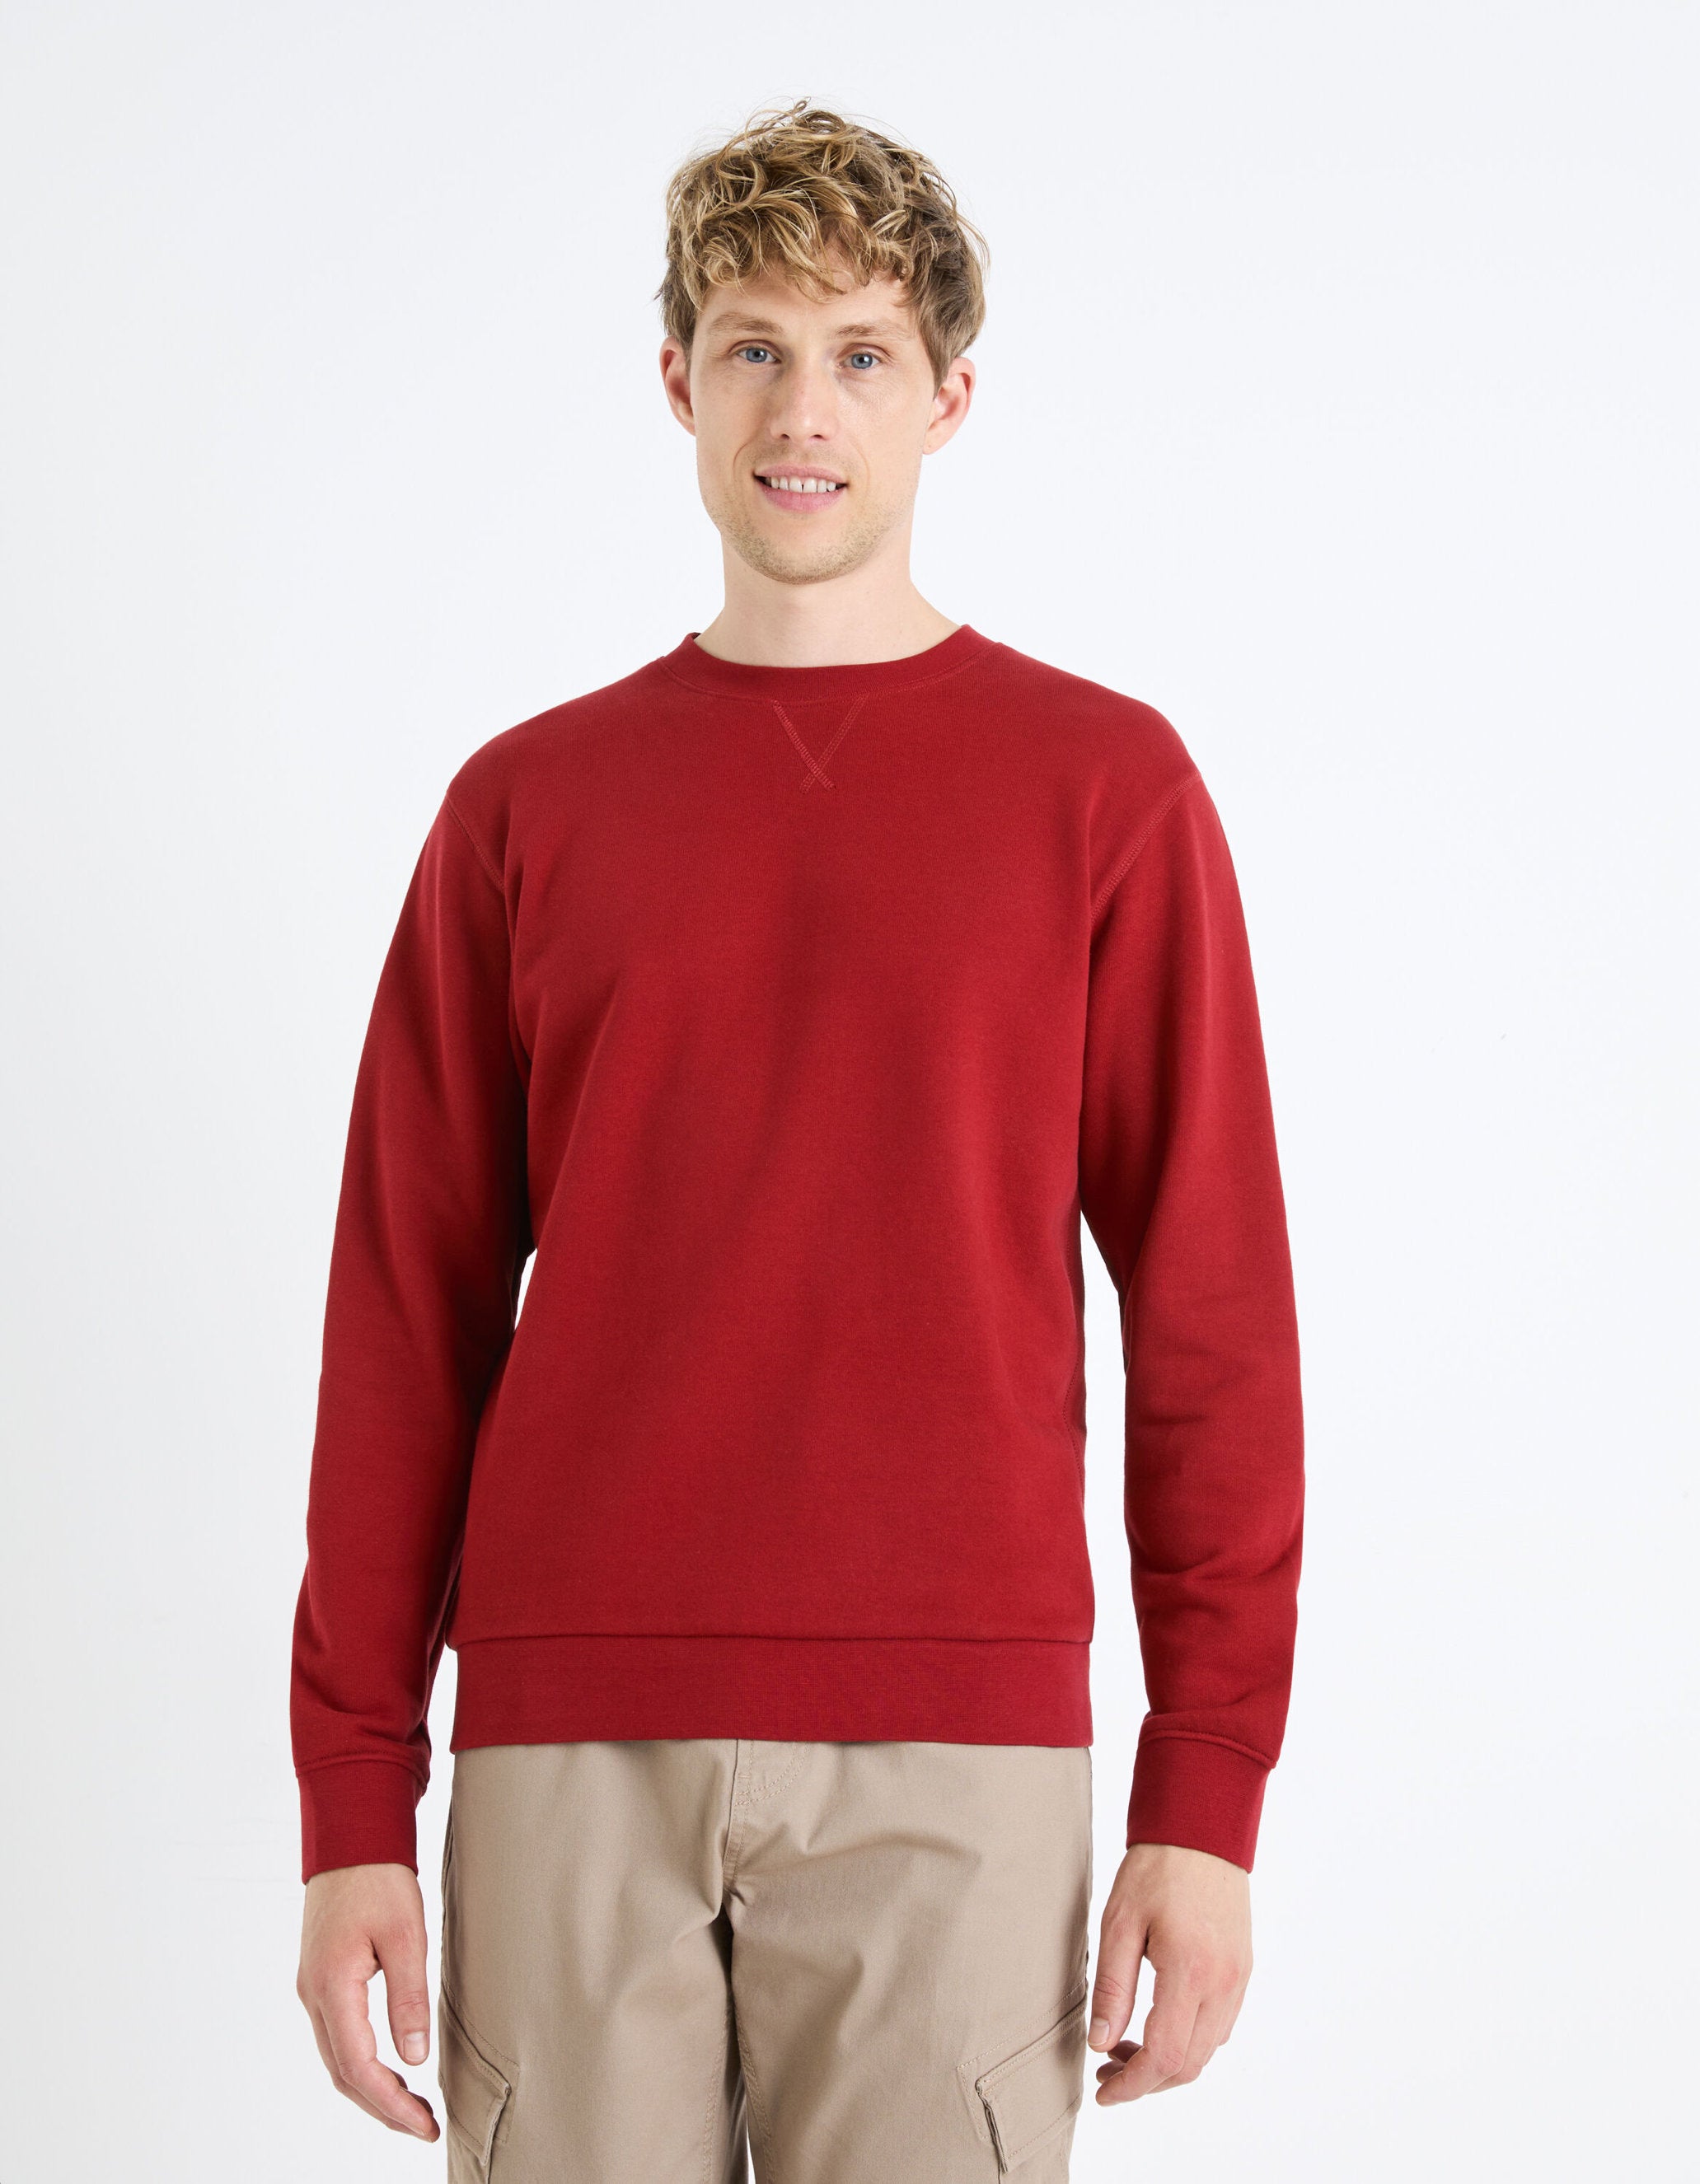 Round Neck Sweatshirt 100% Cotton_FESEVEN_BURGUNDY_03